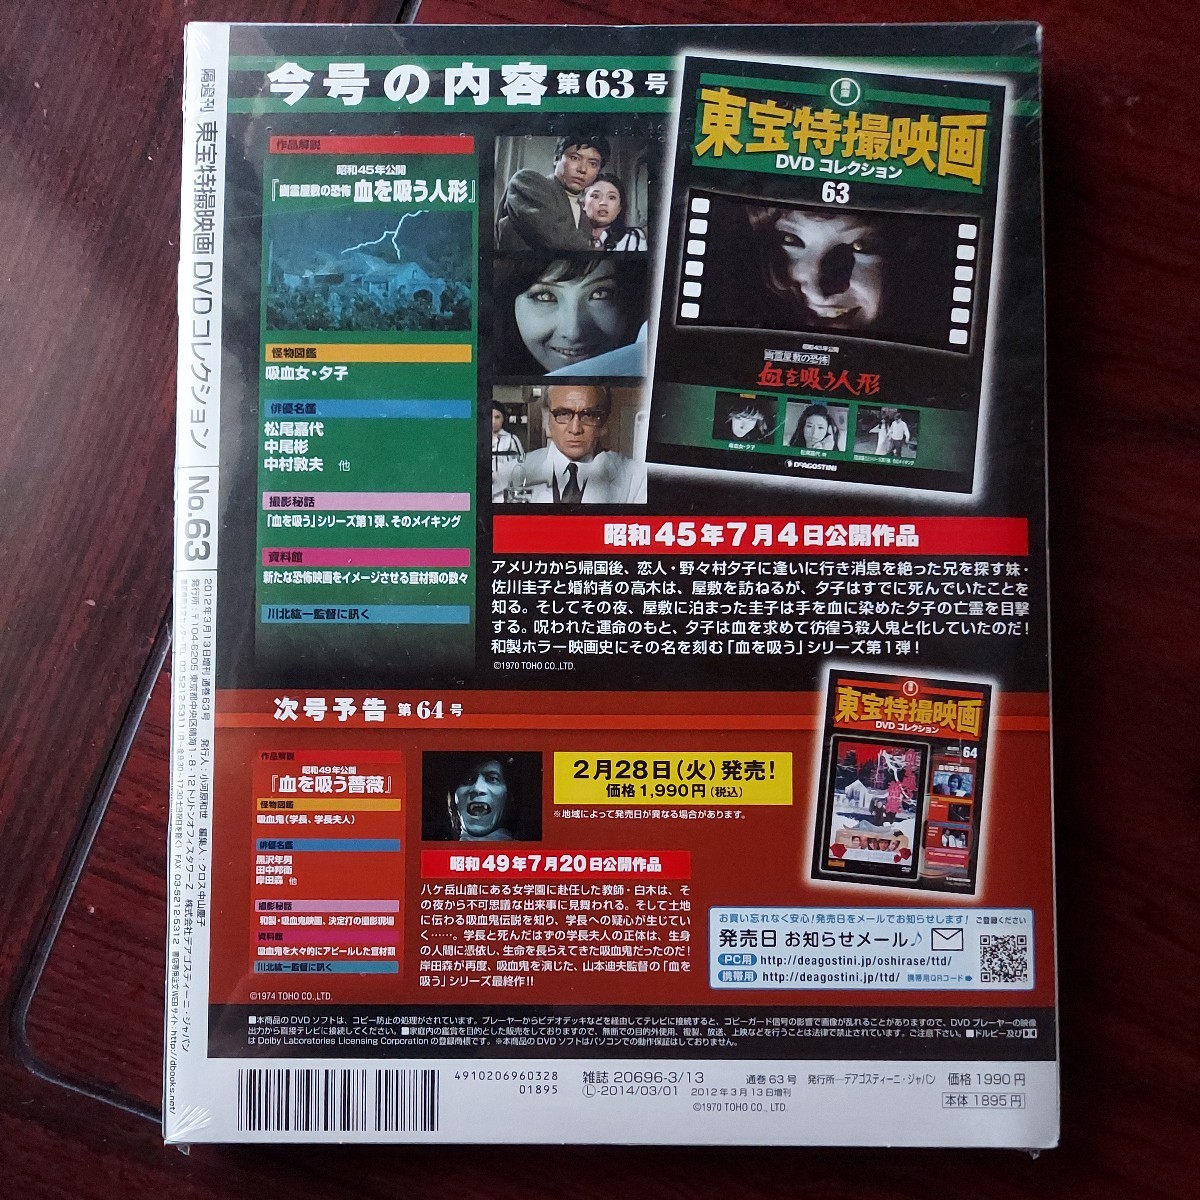 血を吸う人形 幽霊屋敷の恐怖 東宝特撮映画DVDコレクション 63 松尾